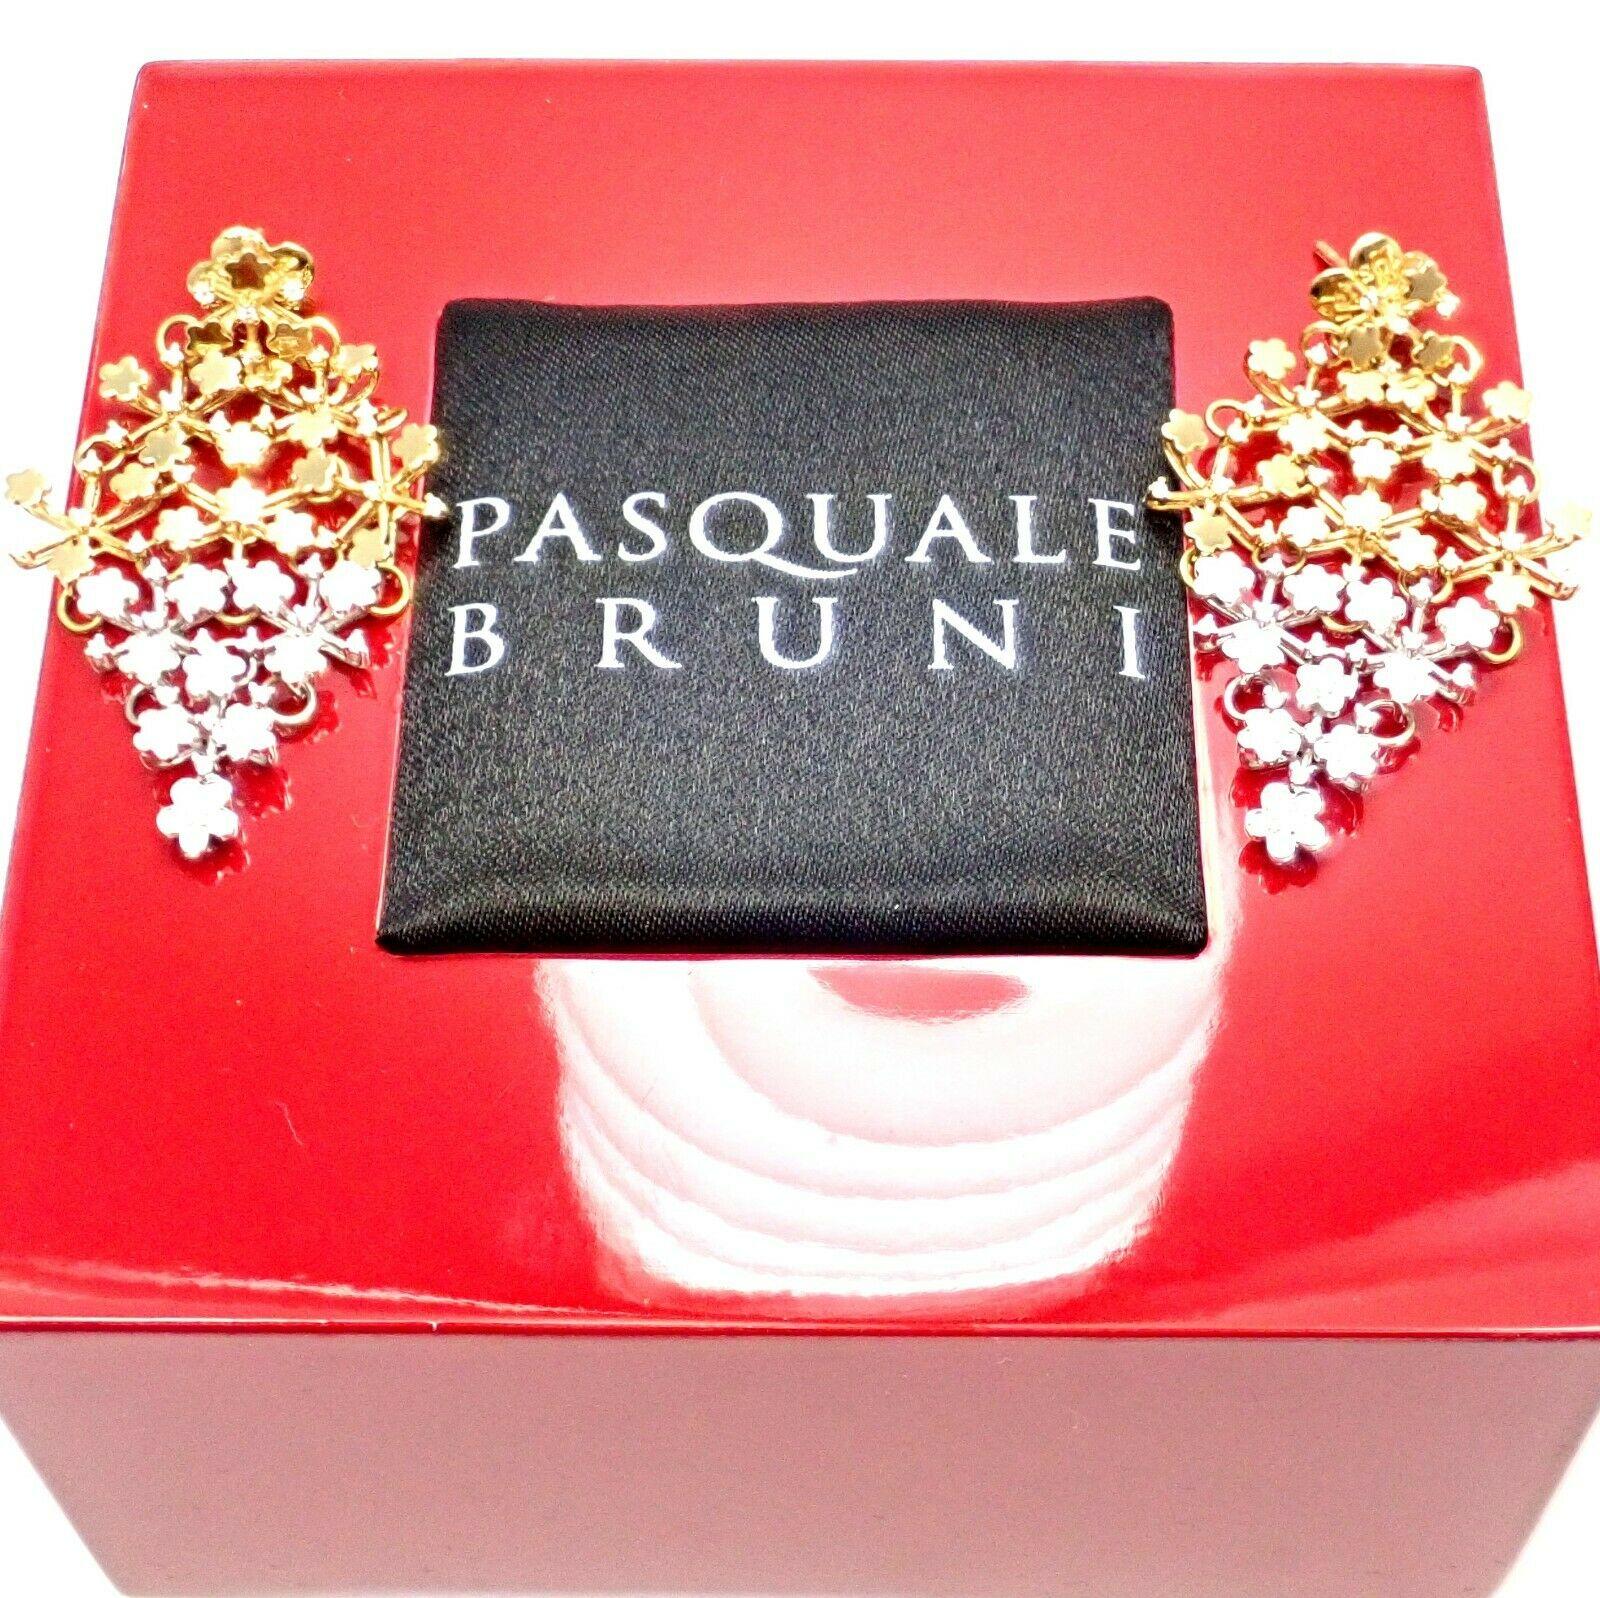 Pasquale Bruni Prato Fioroto Diamond White and Yellow Gold Earrings 1